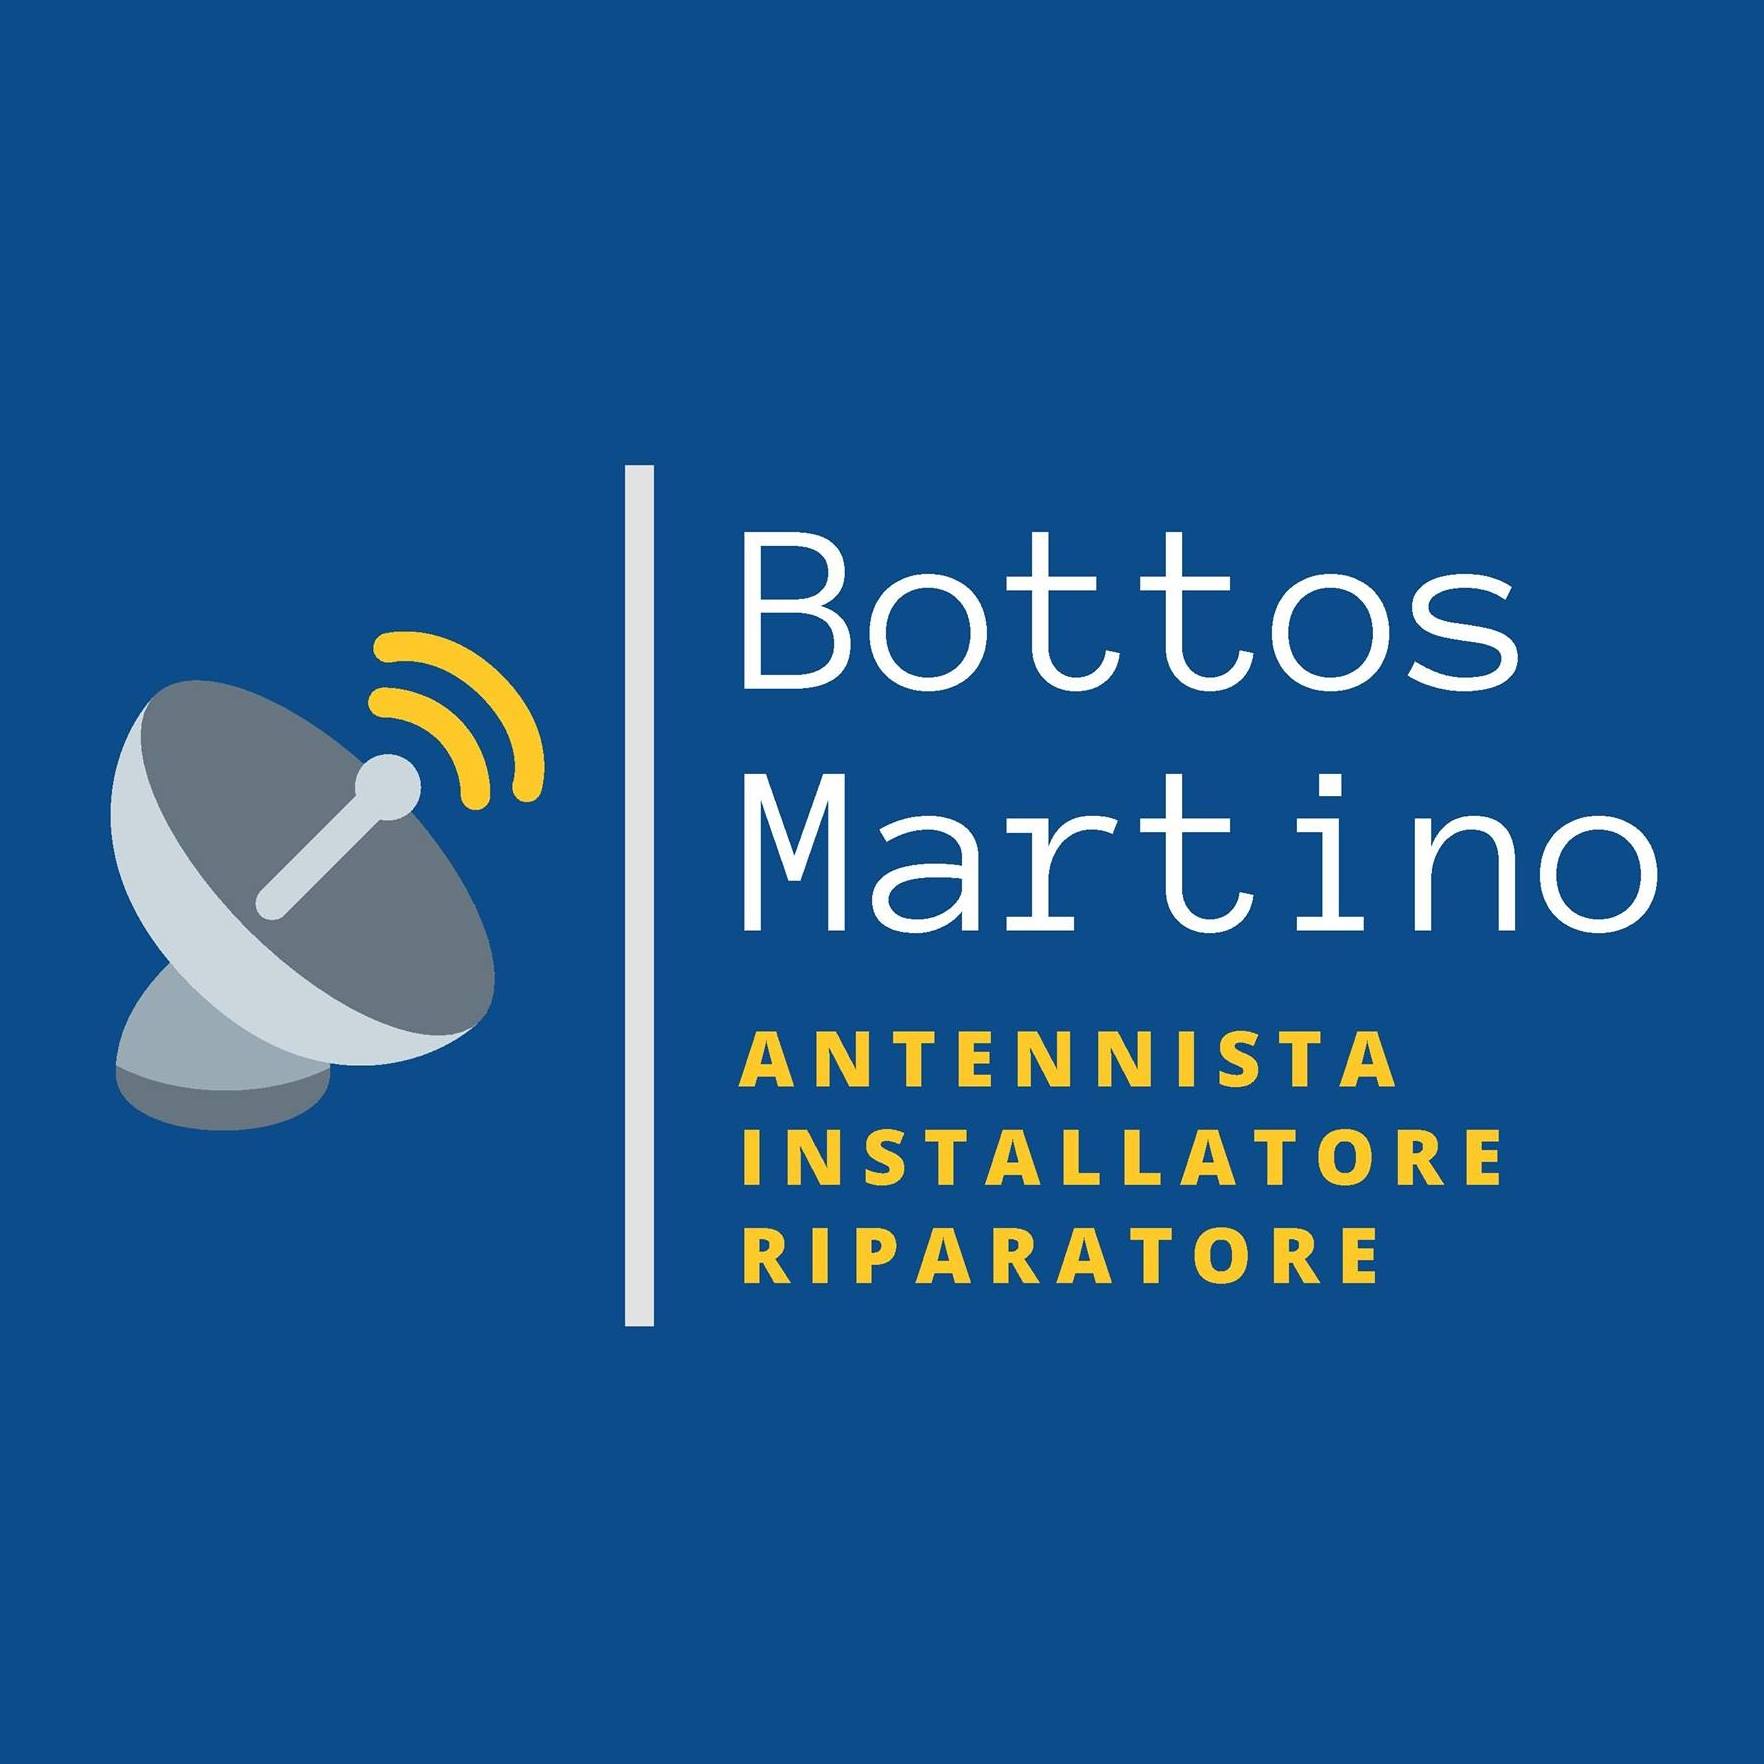 martinobottos.jpg